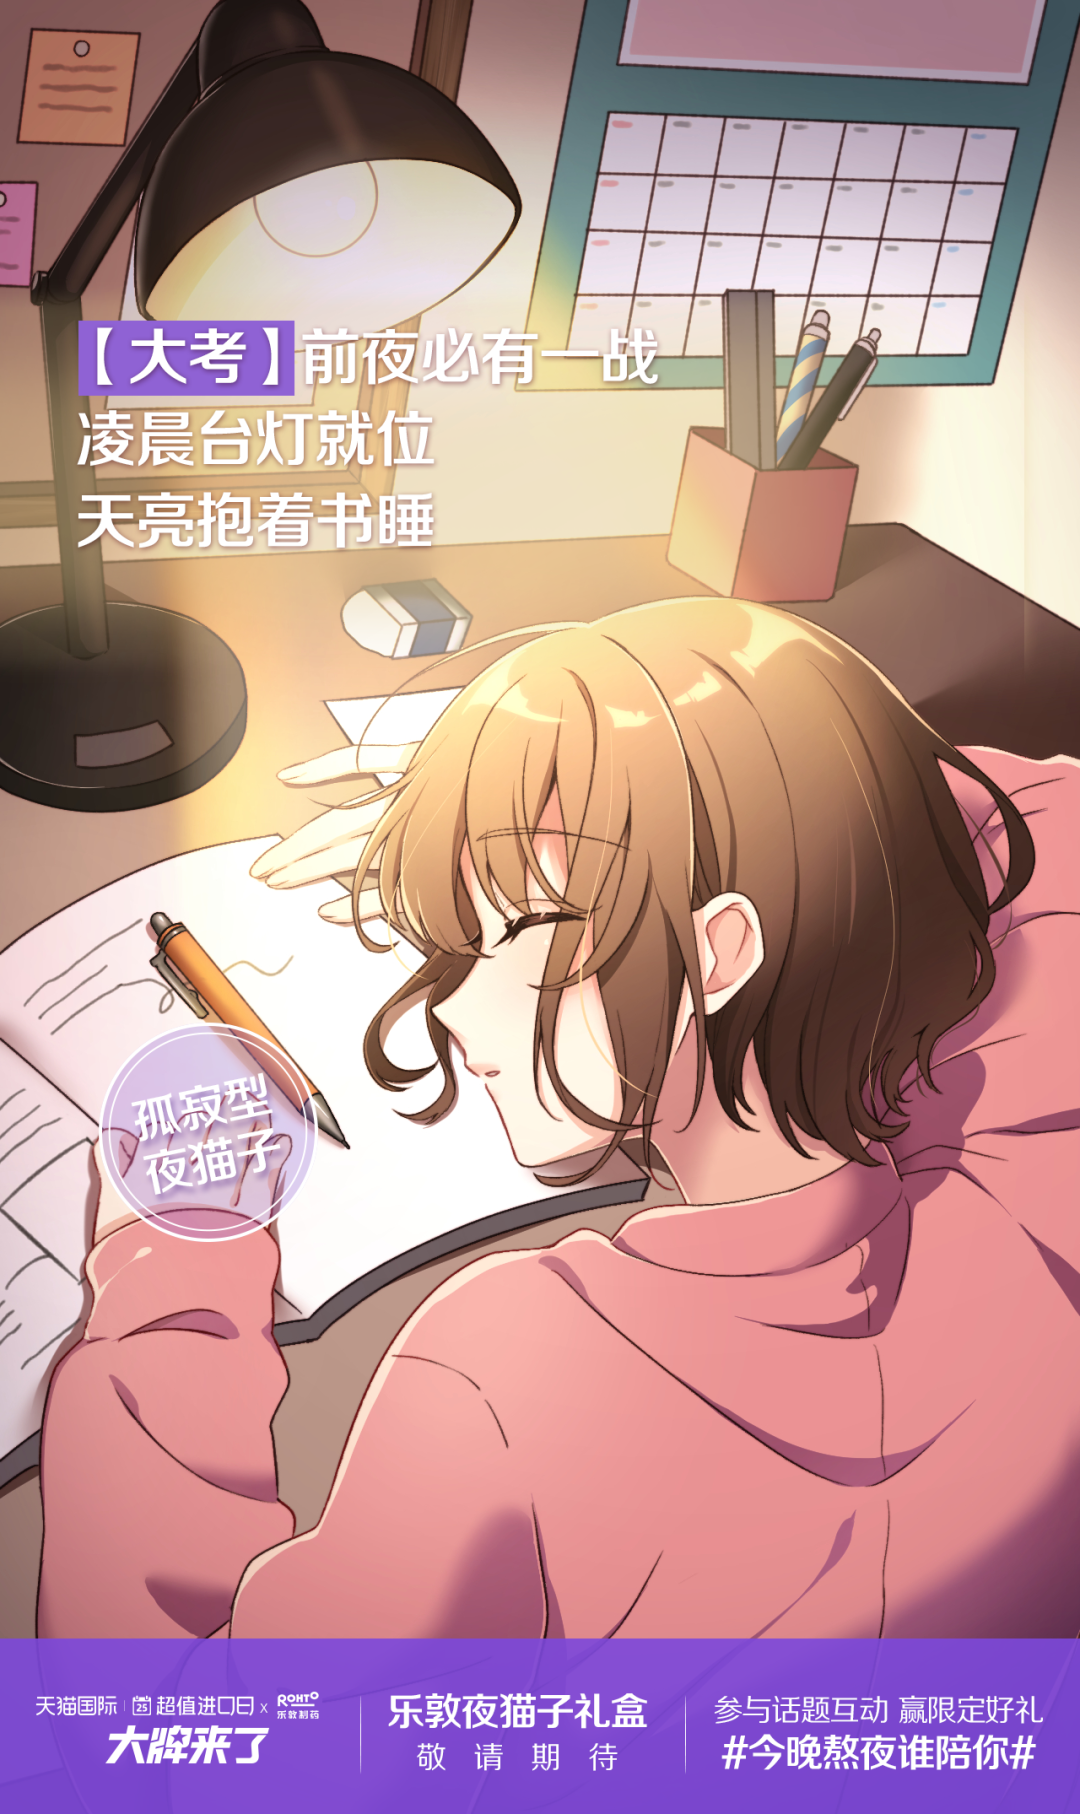 重生东京的日常生活(乱炖夜猫)全本免费在线阅读-起点中文网官方正版